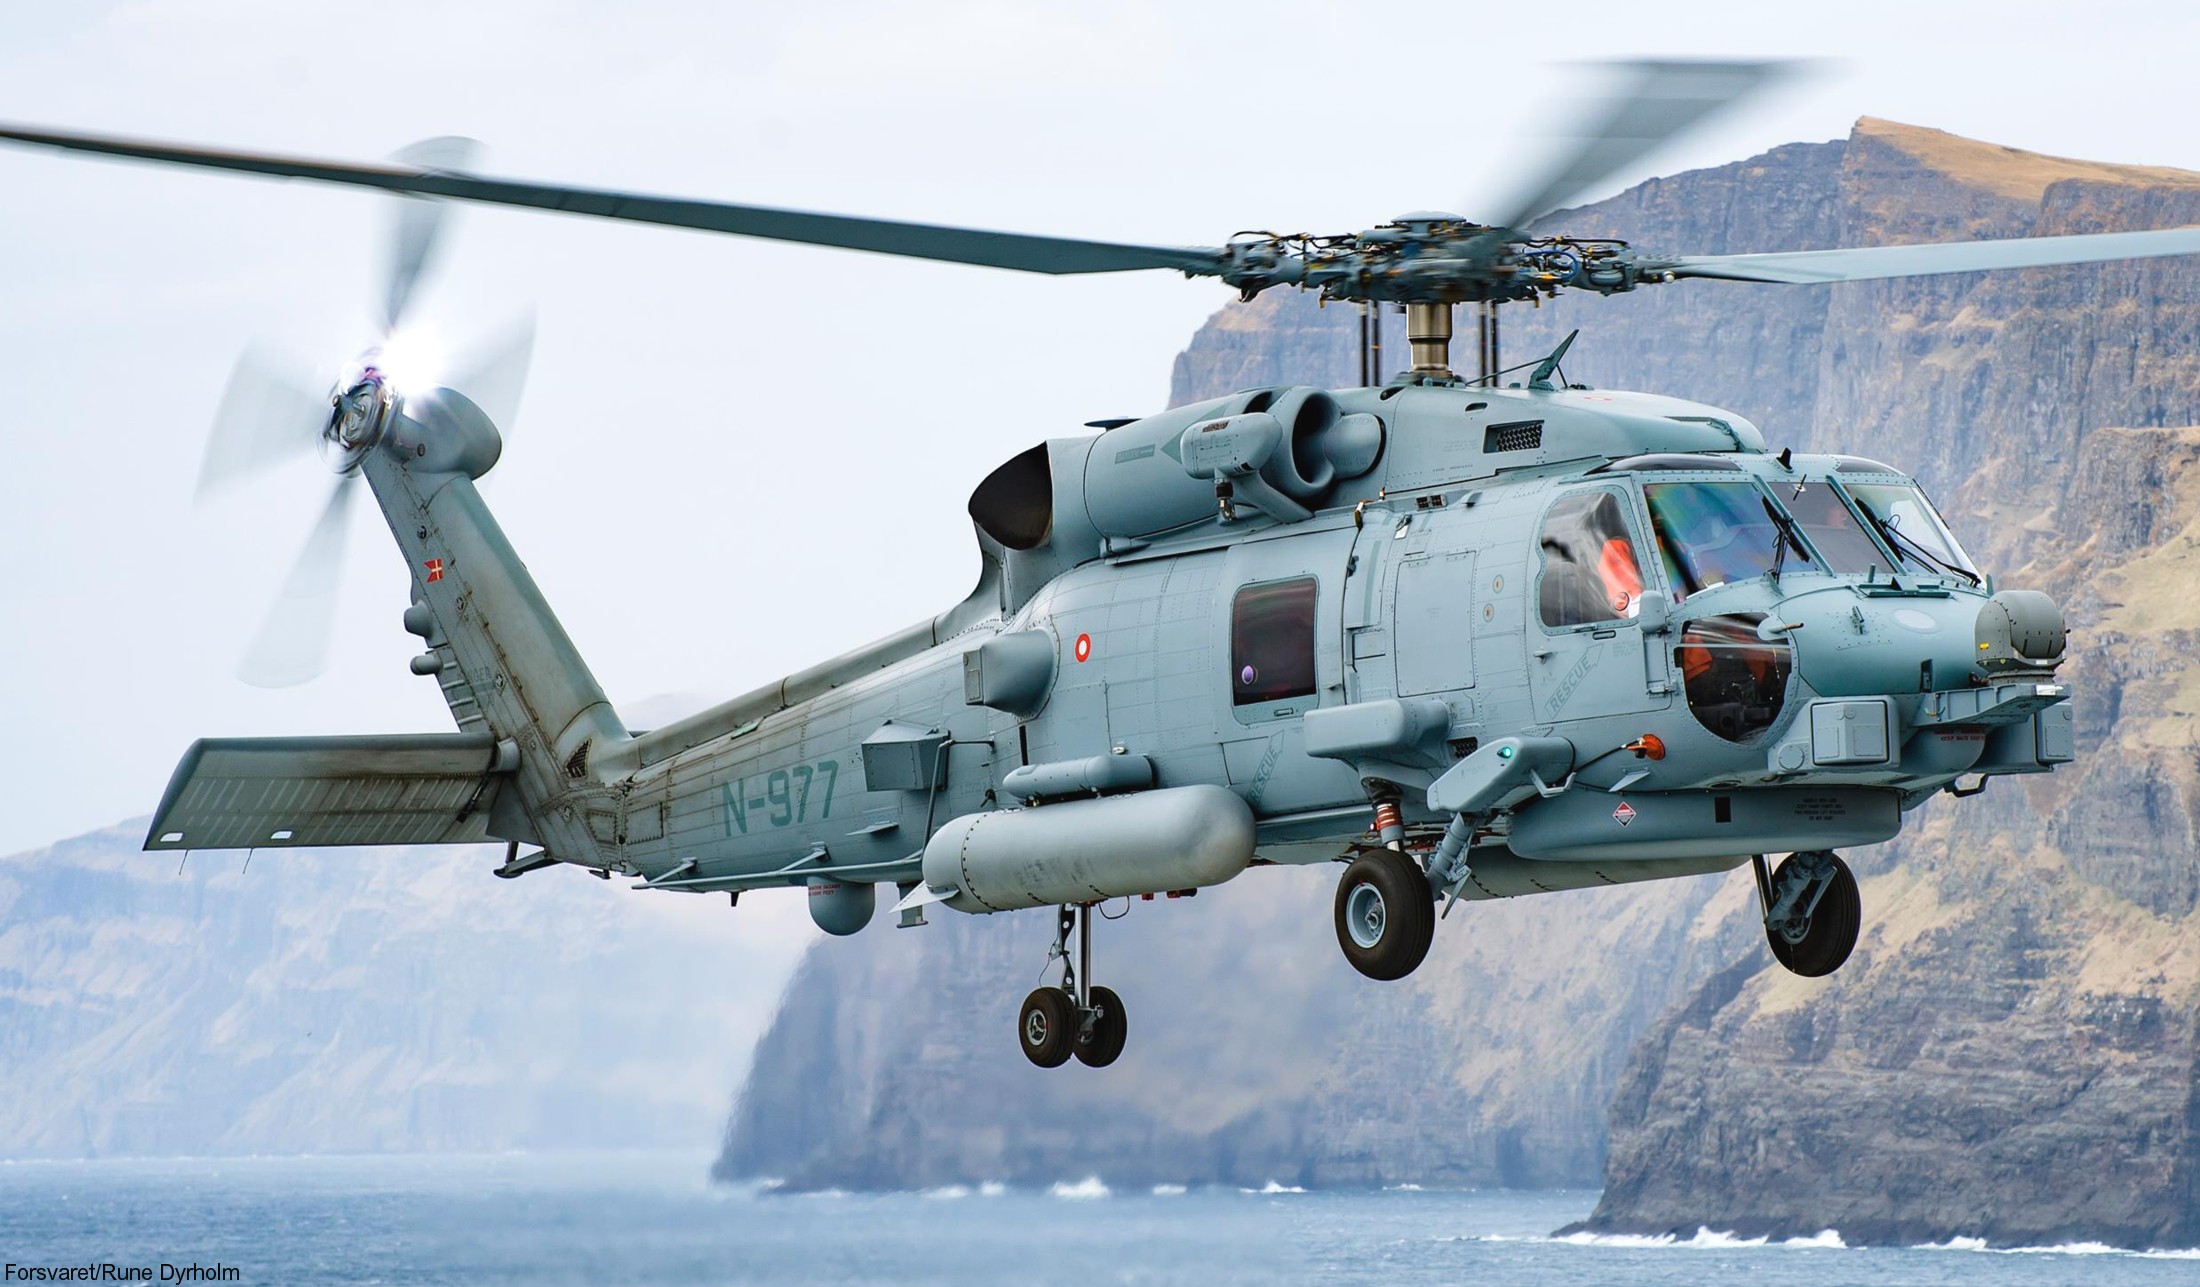 mh-60r seahawk royal danish navy air force flyvevåbnet kongelige danske marine sikorsky helicopter 723 eskadrille squadron karup 20